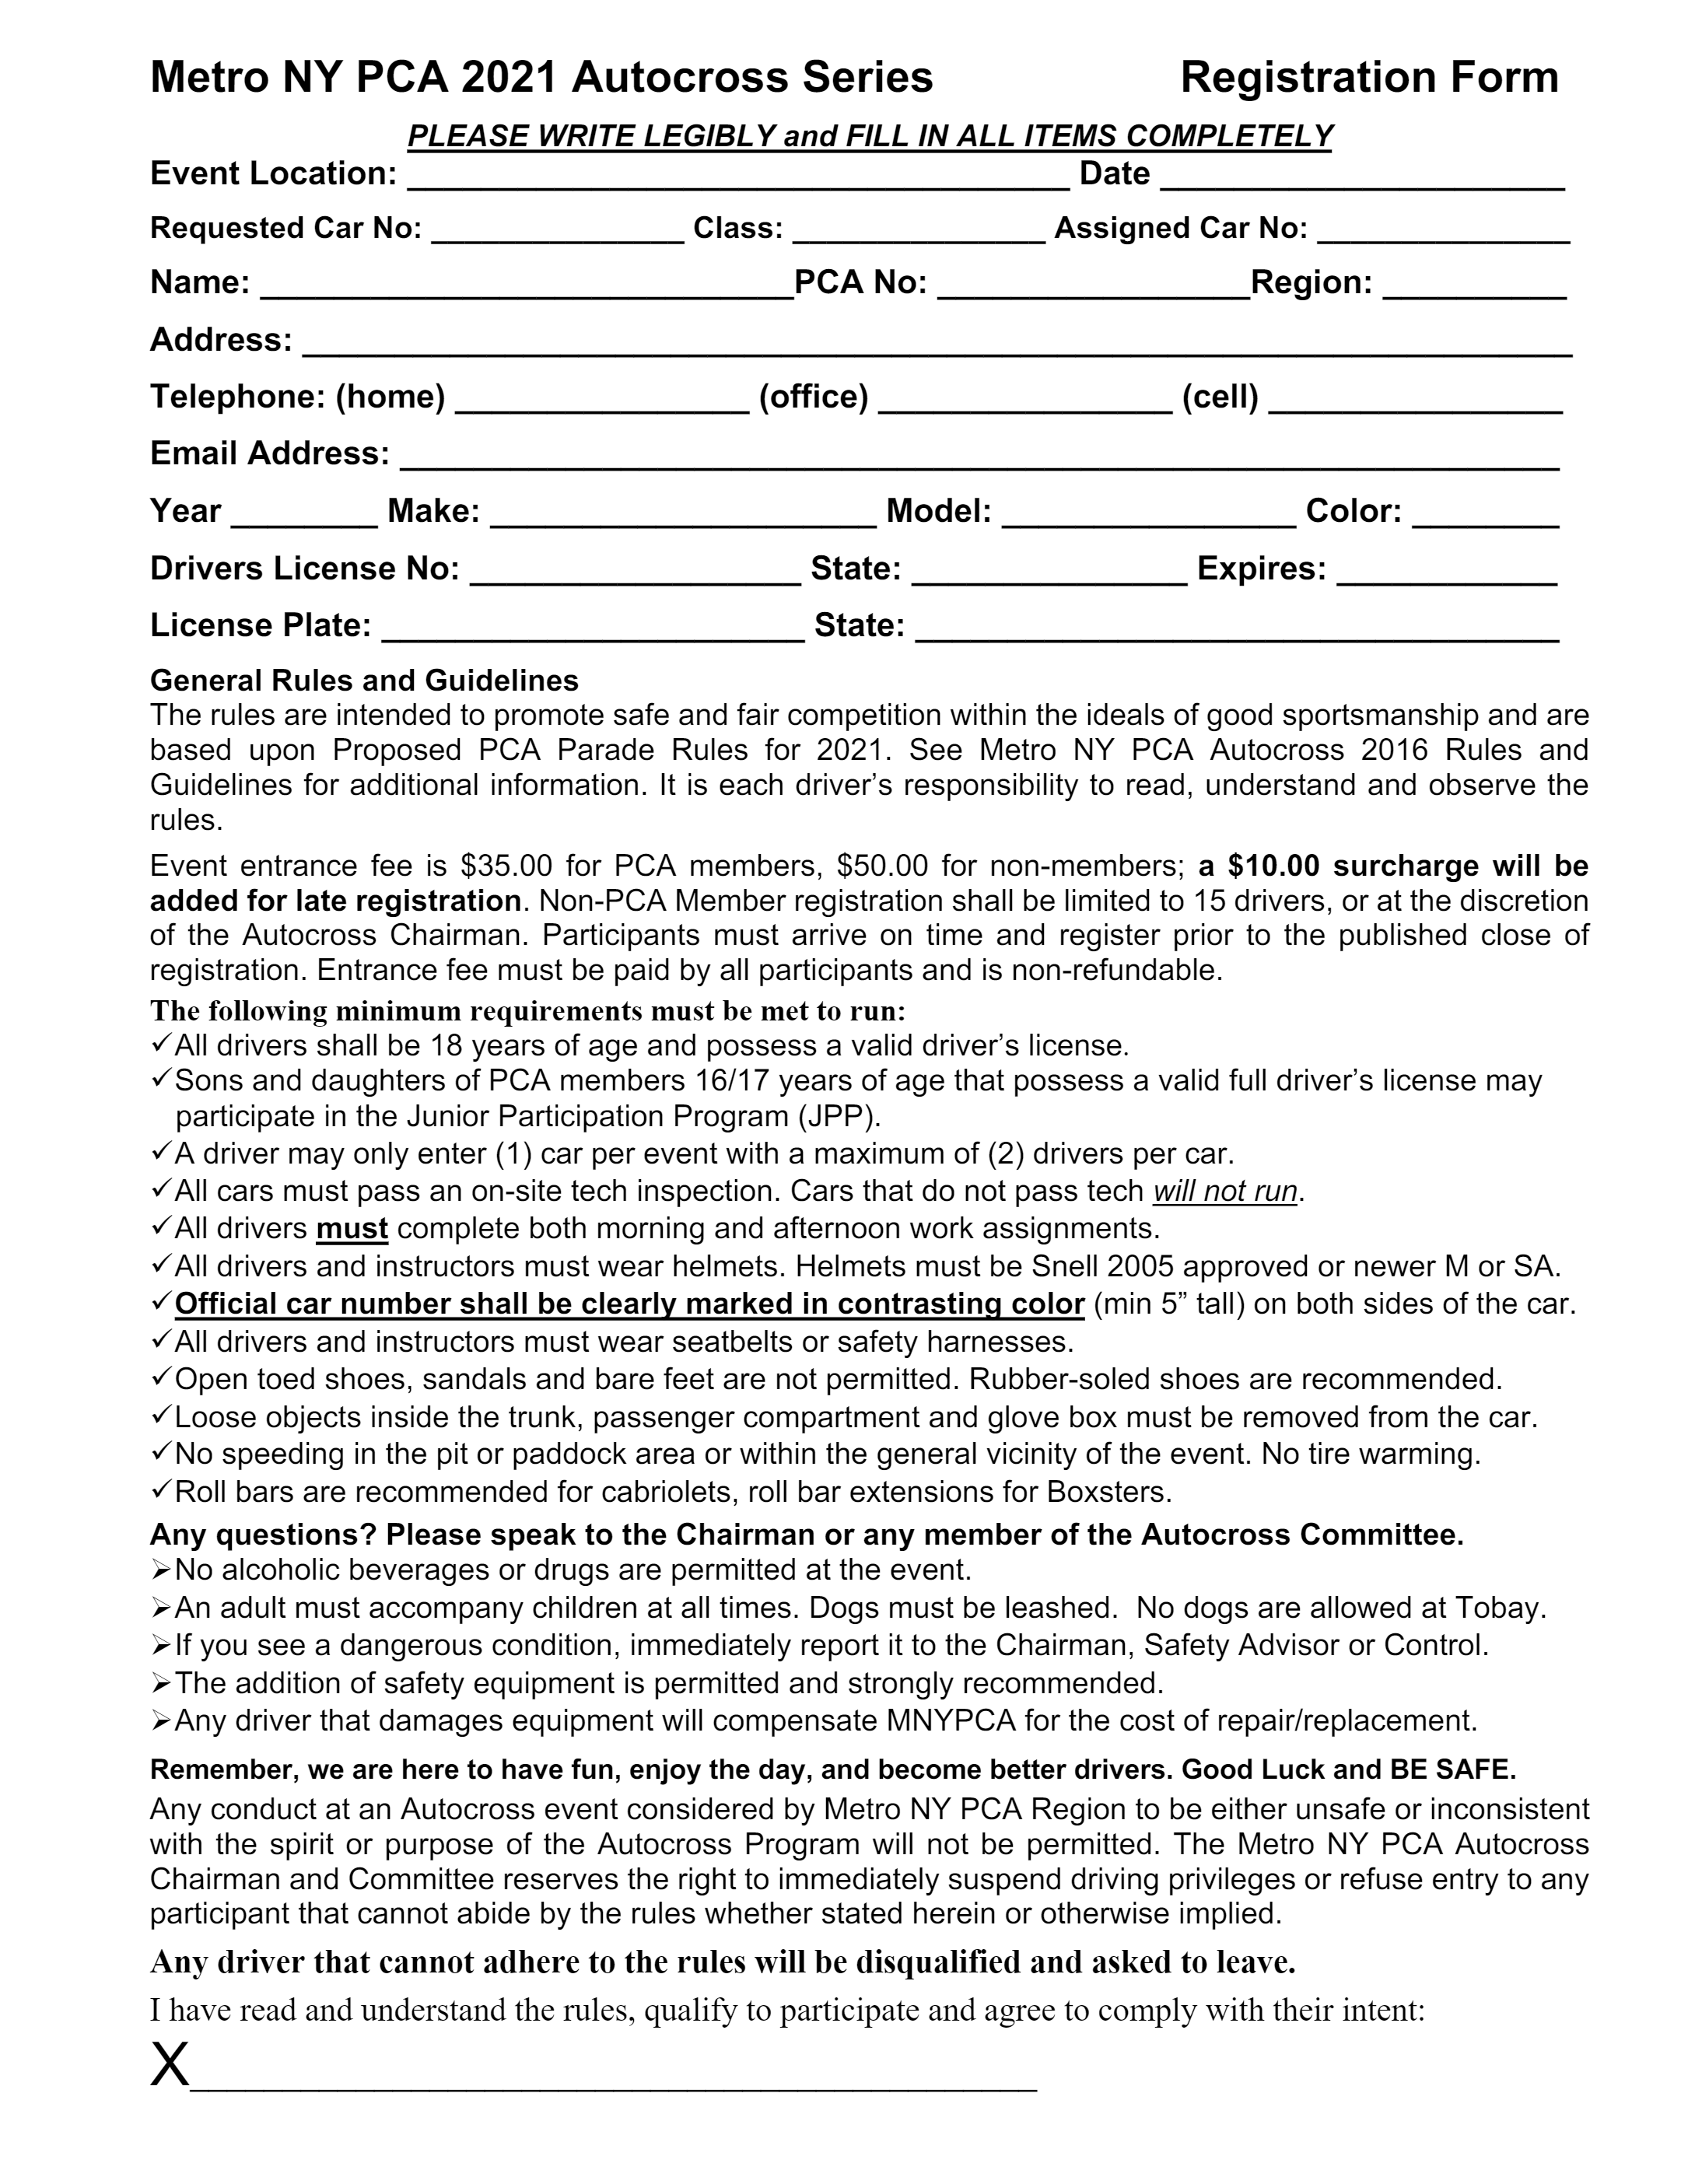 autocross registration form p1